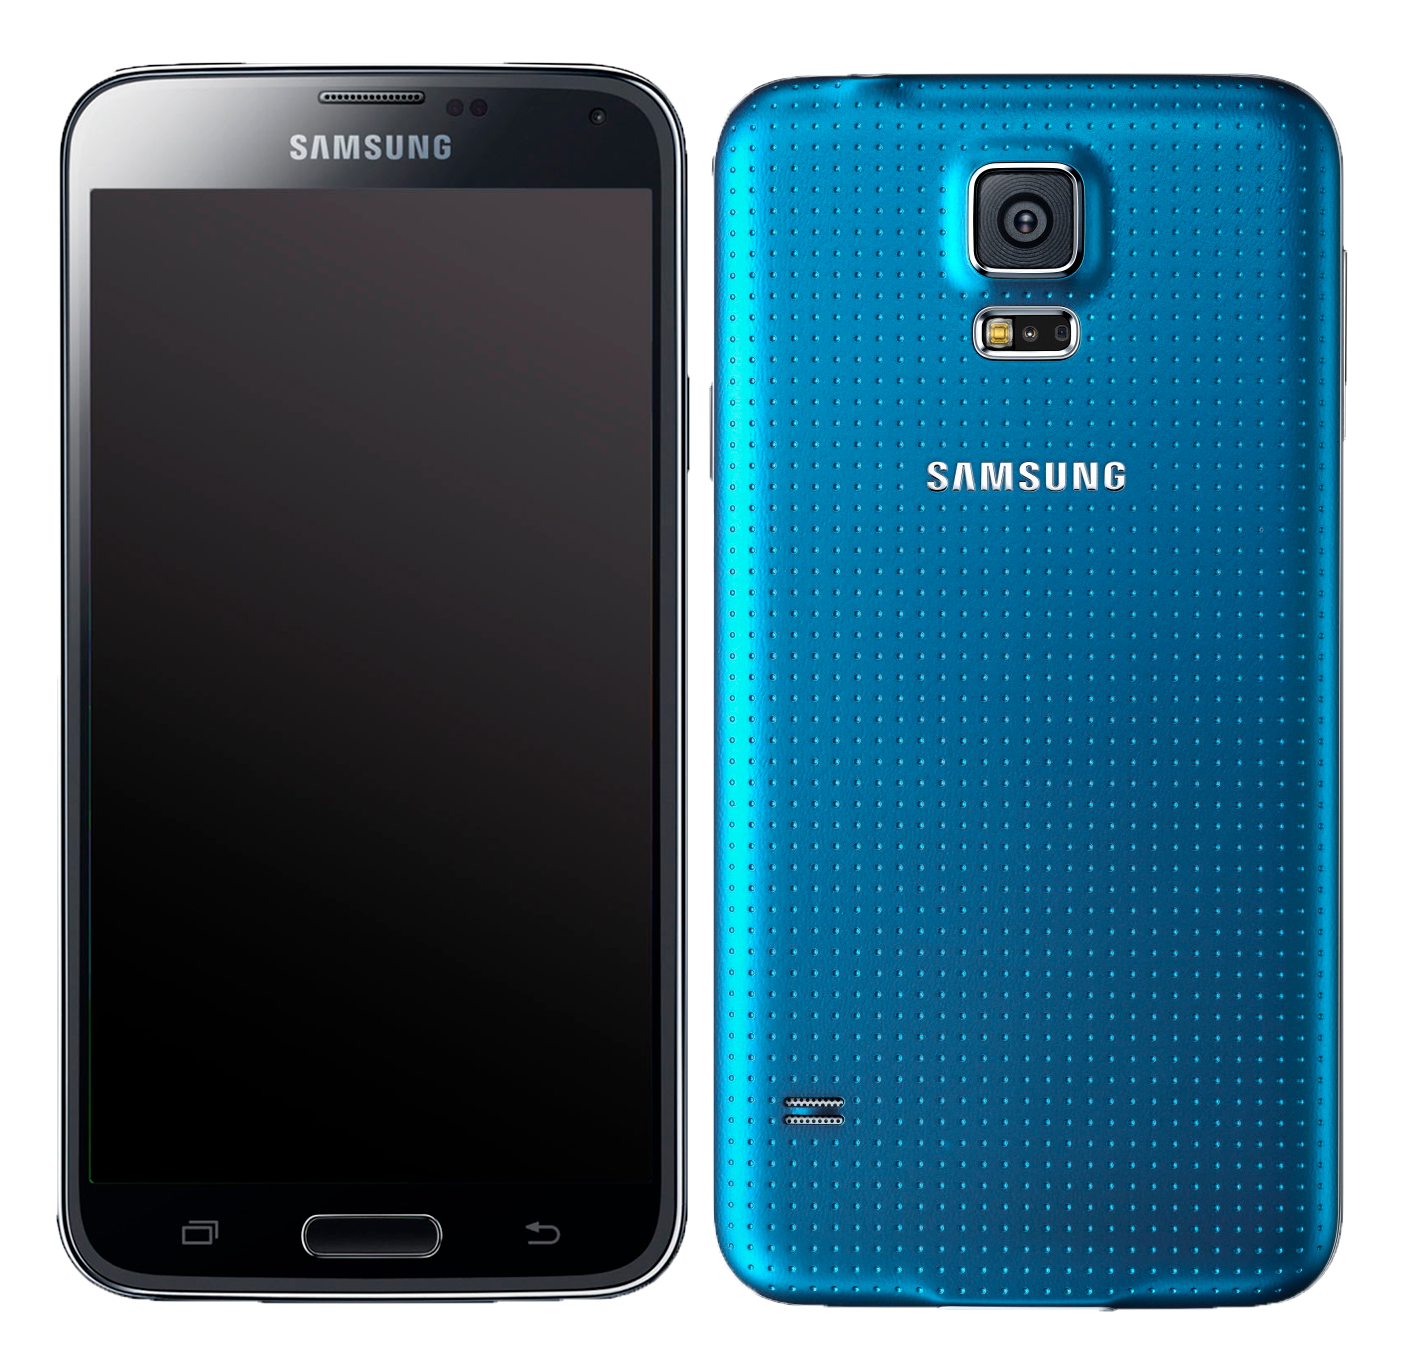 Samsung Galaxy s5 16 GB blau - Ohne Vertrag